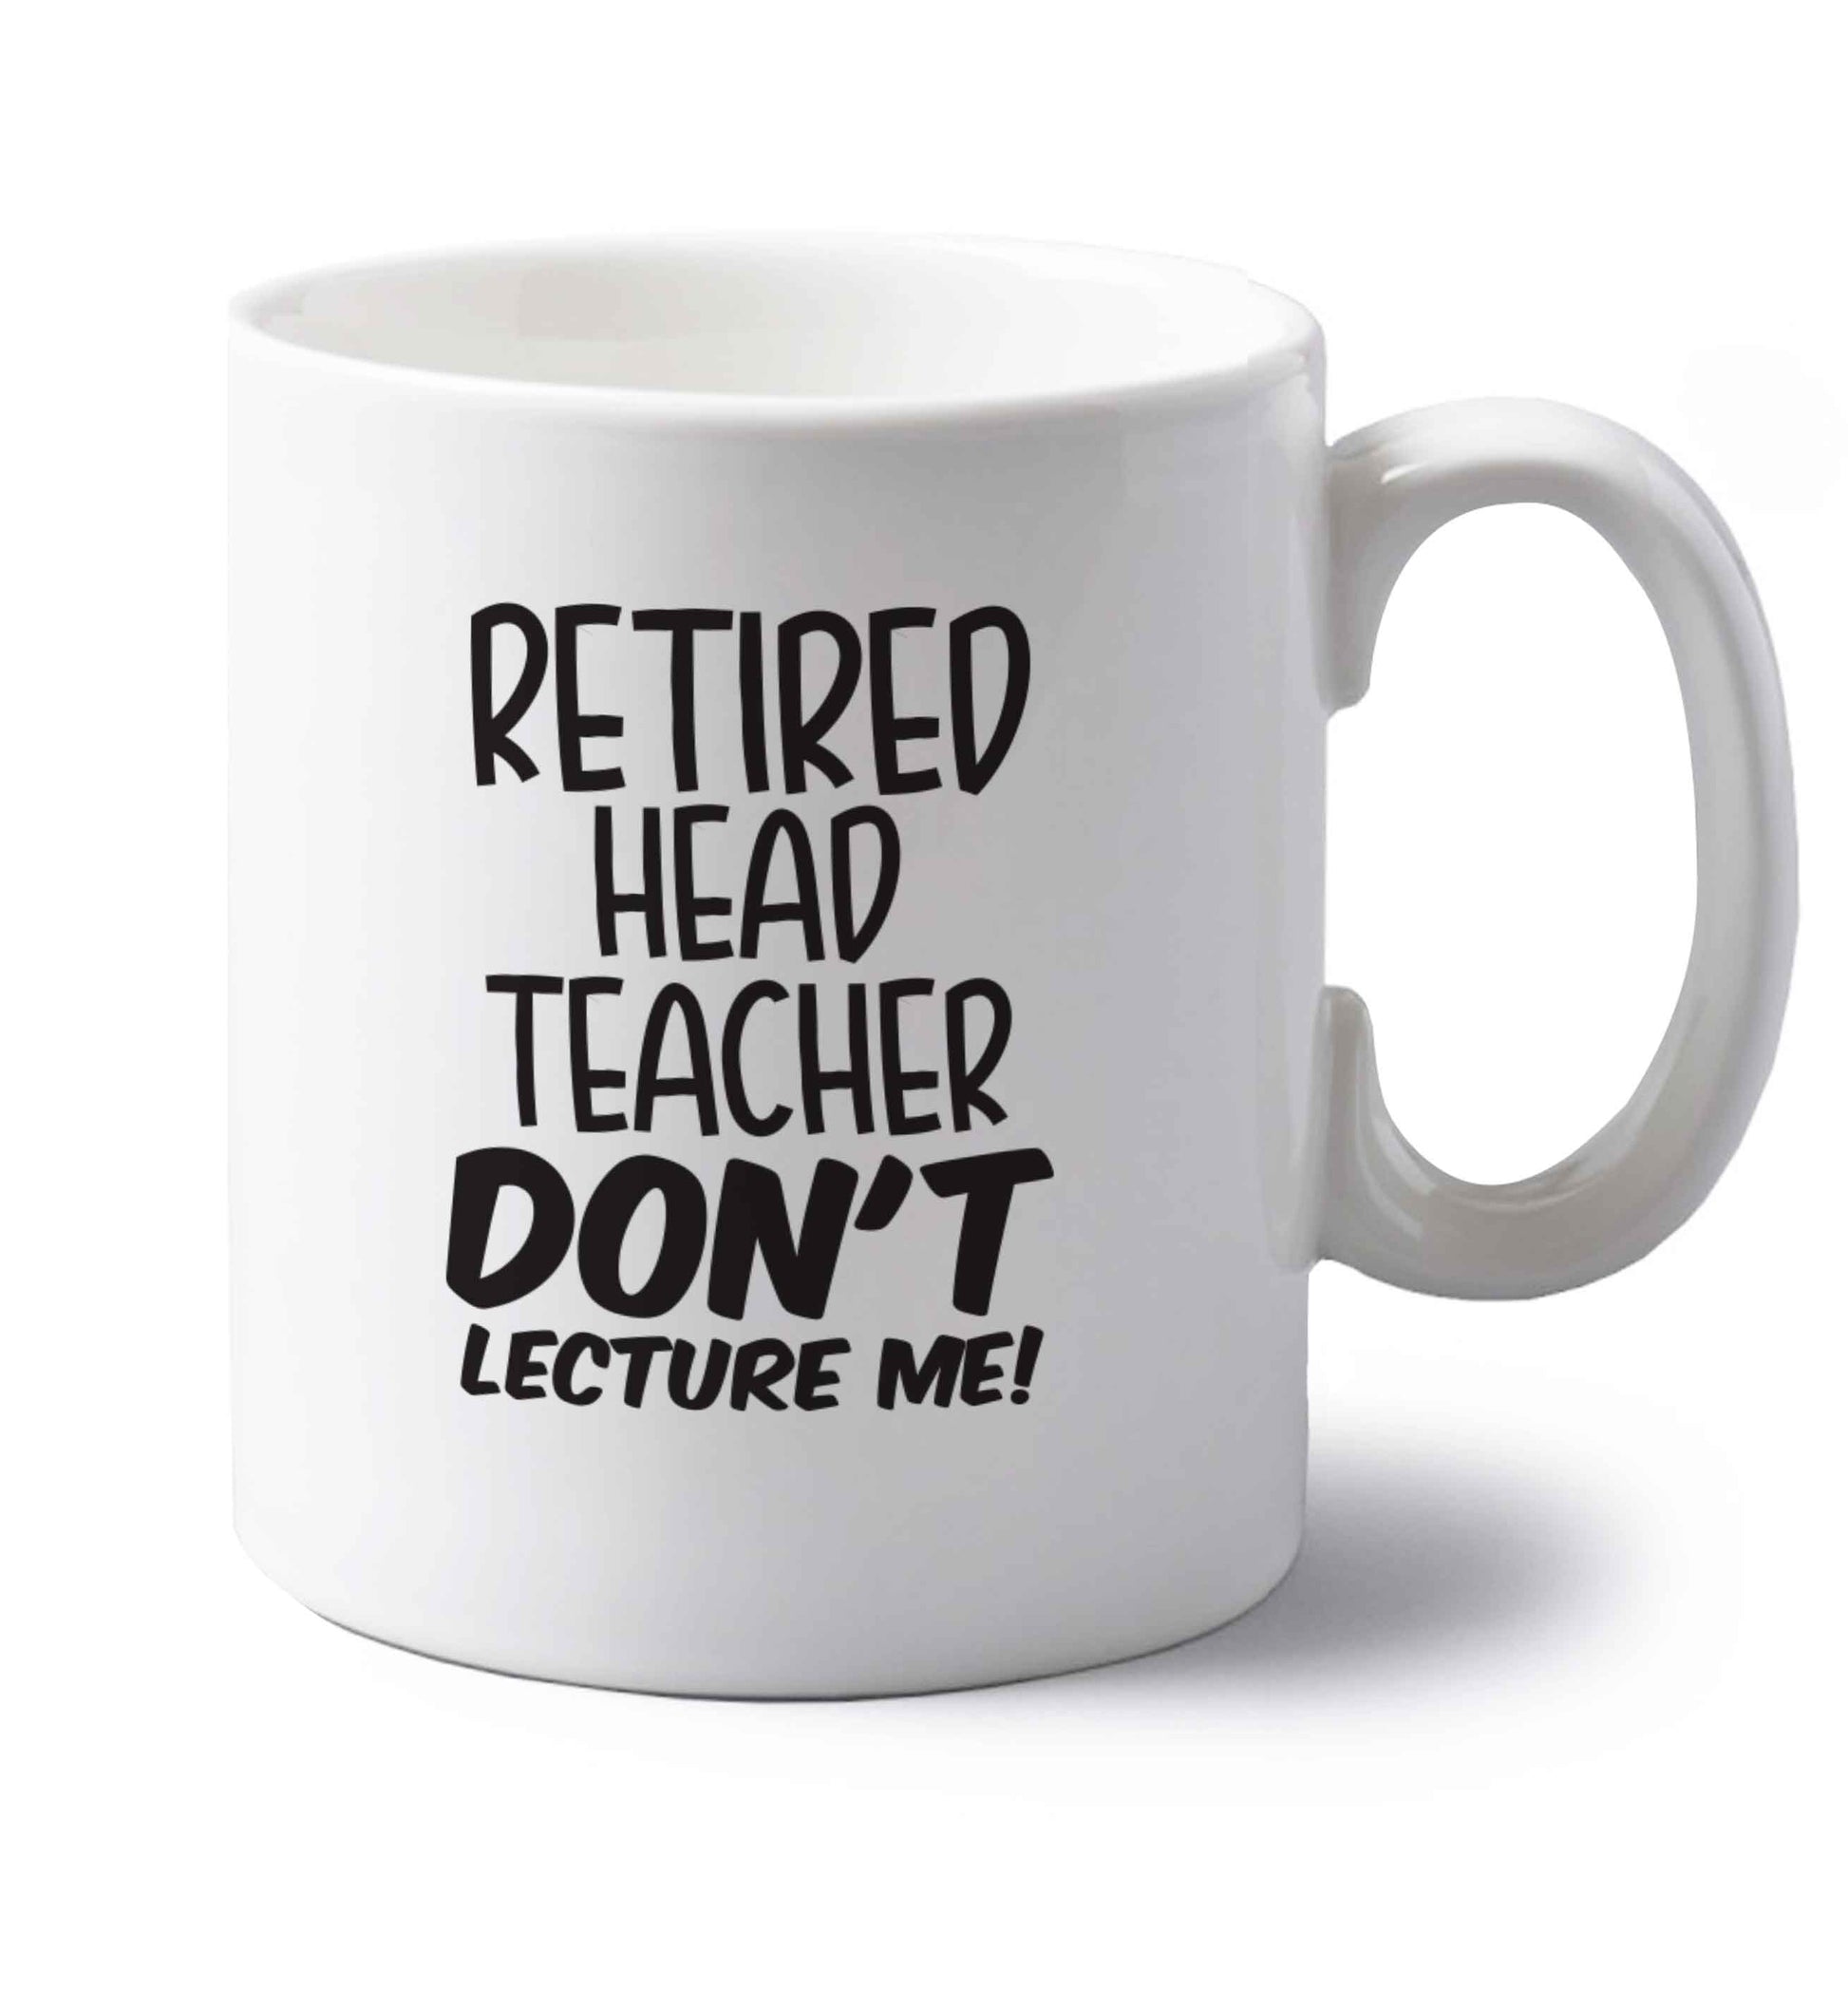 Retired head teacher don't lecture me! left handed white ceramic mug 